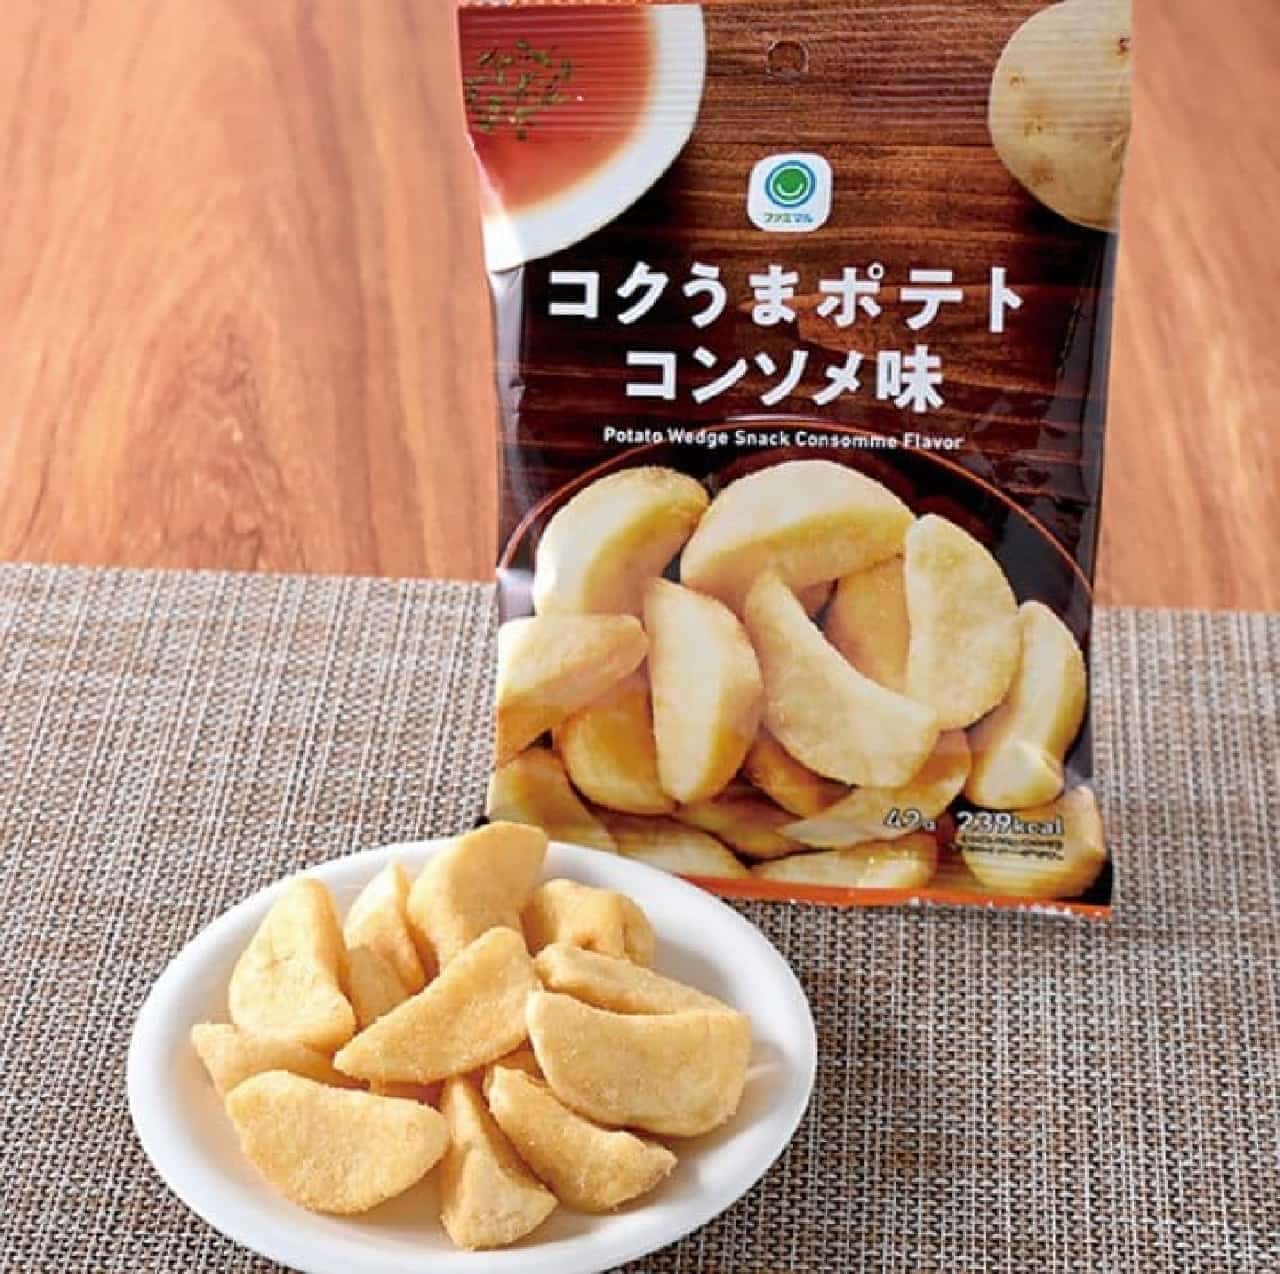 FamilyMart "Kokuuma Potato Consommé Flavor